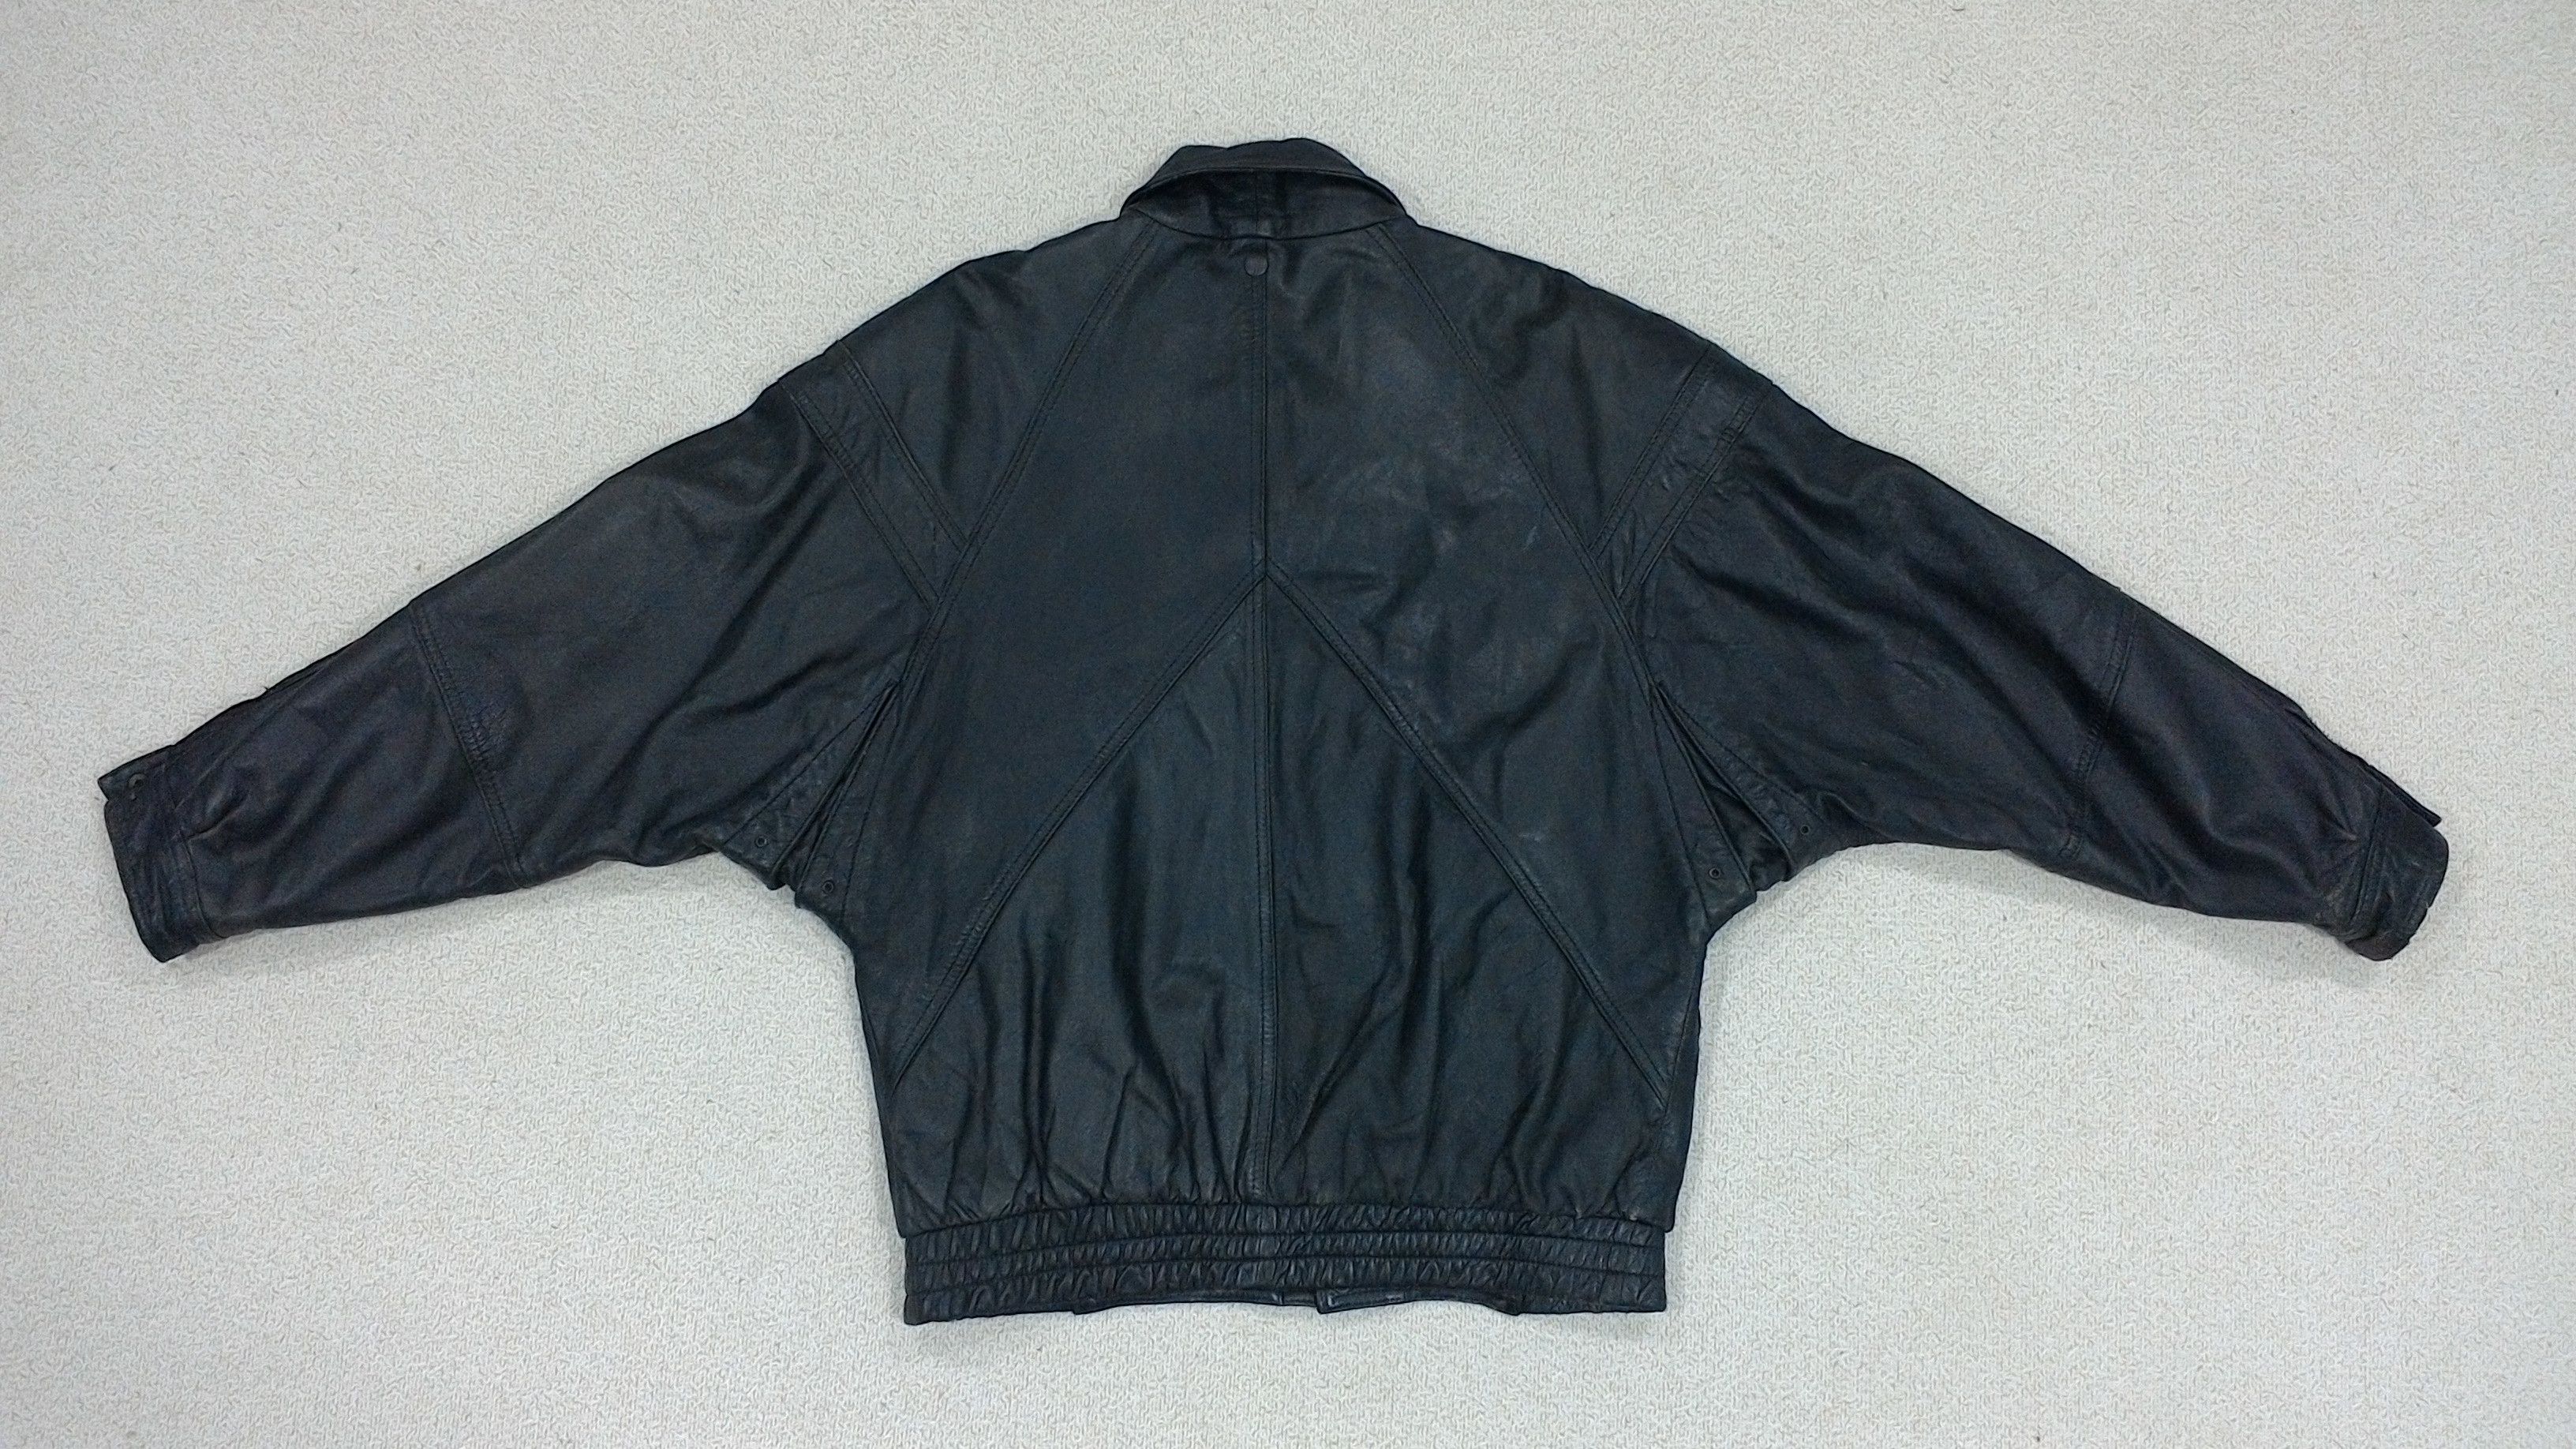 Vintage FIOCCHI Leather Jacket Size US L / EU 52-54 / 3 - 8 Thumbnail